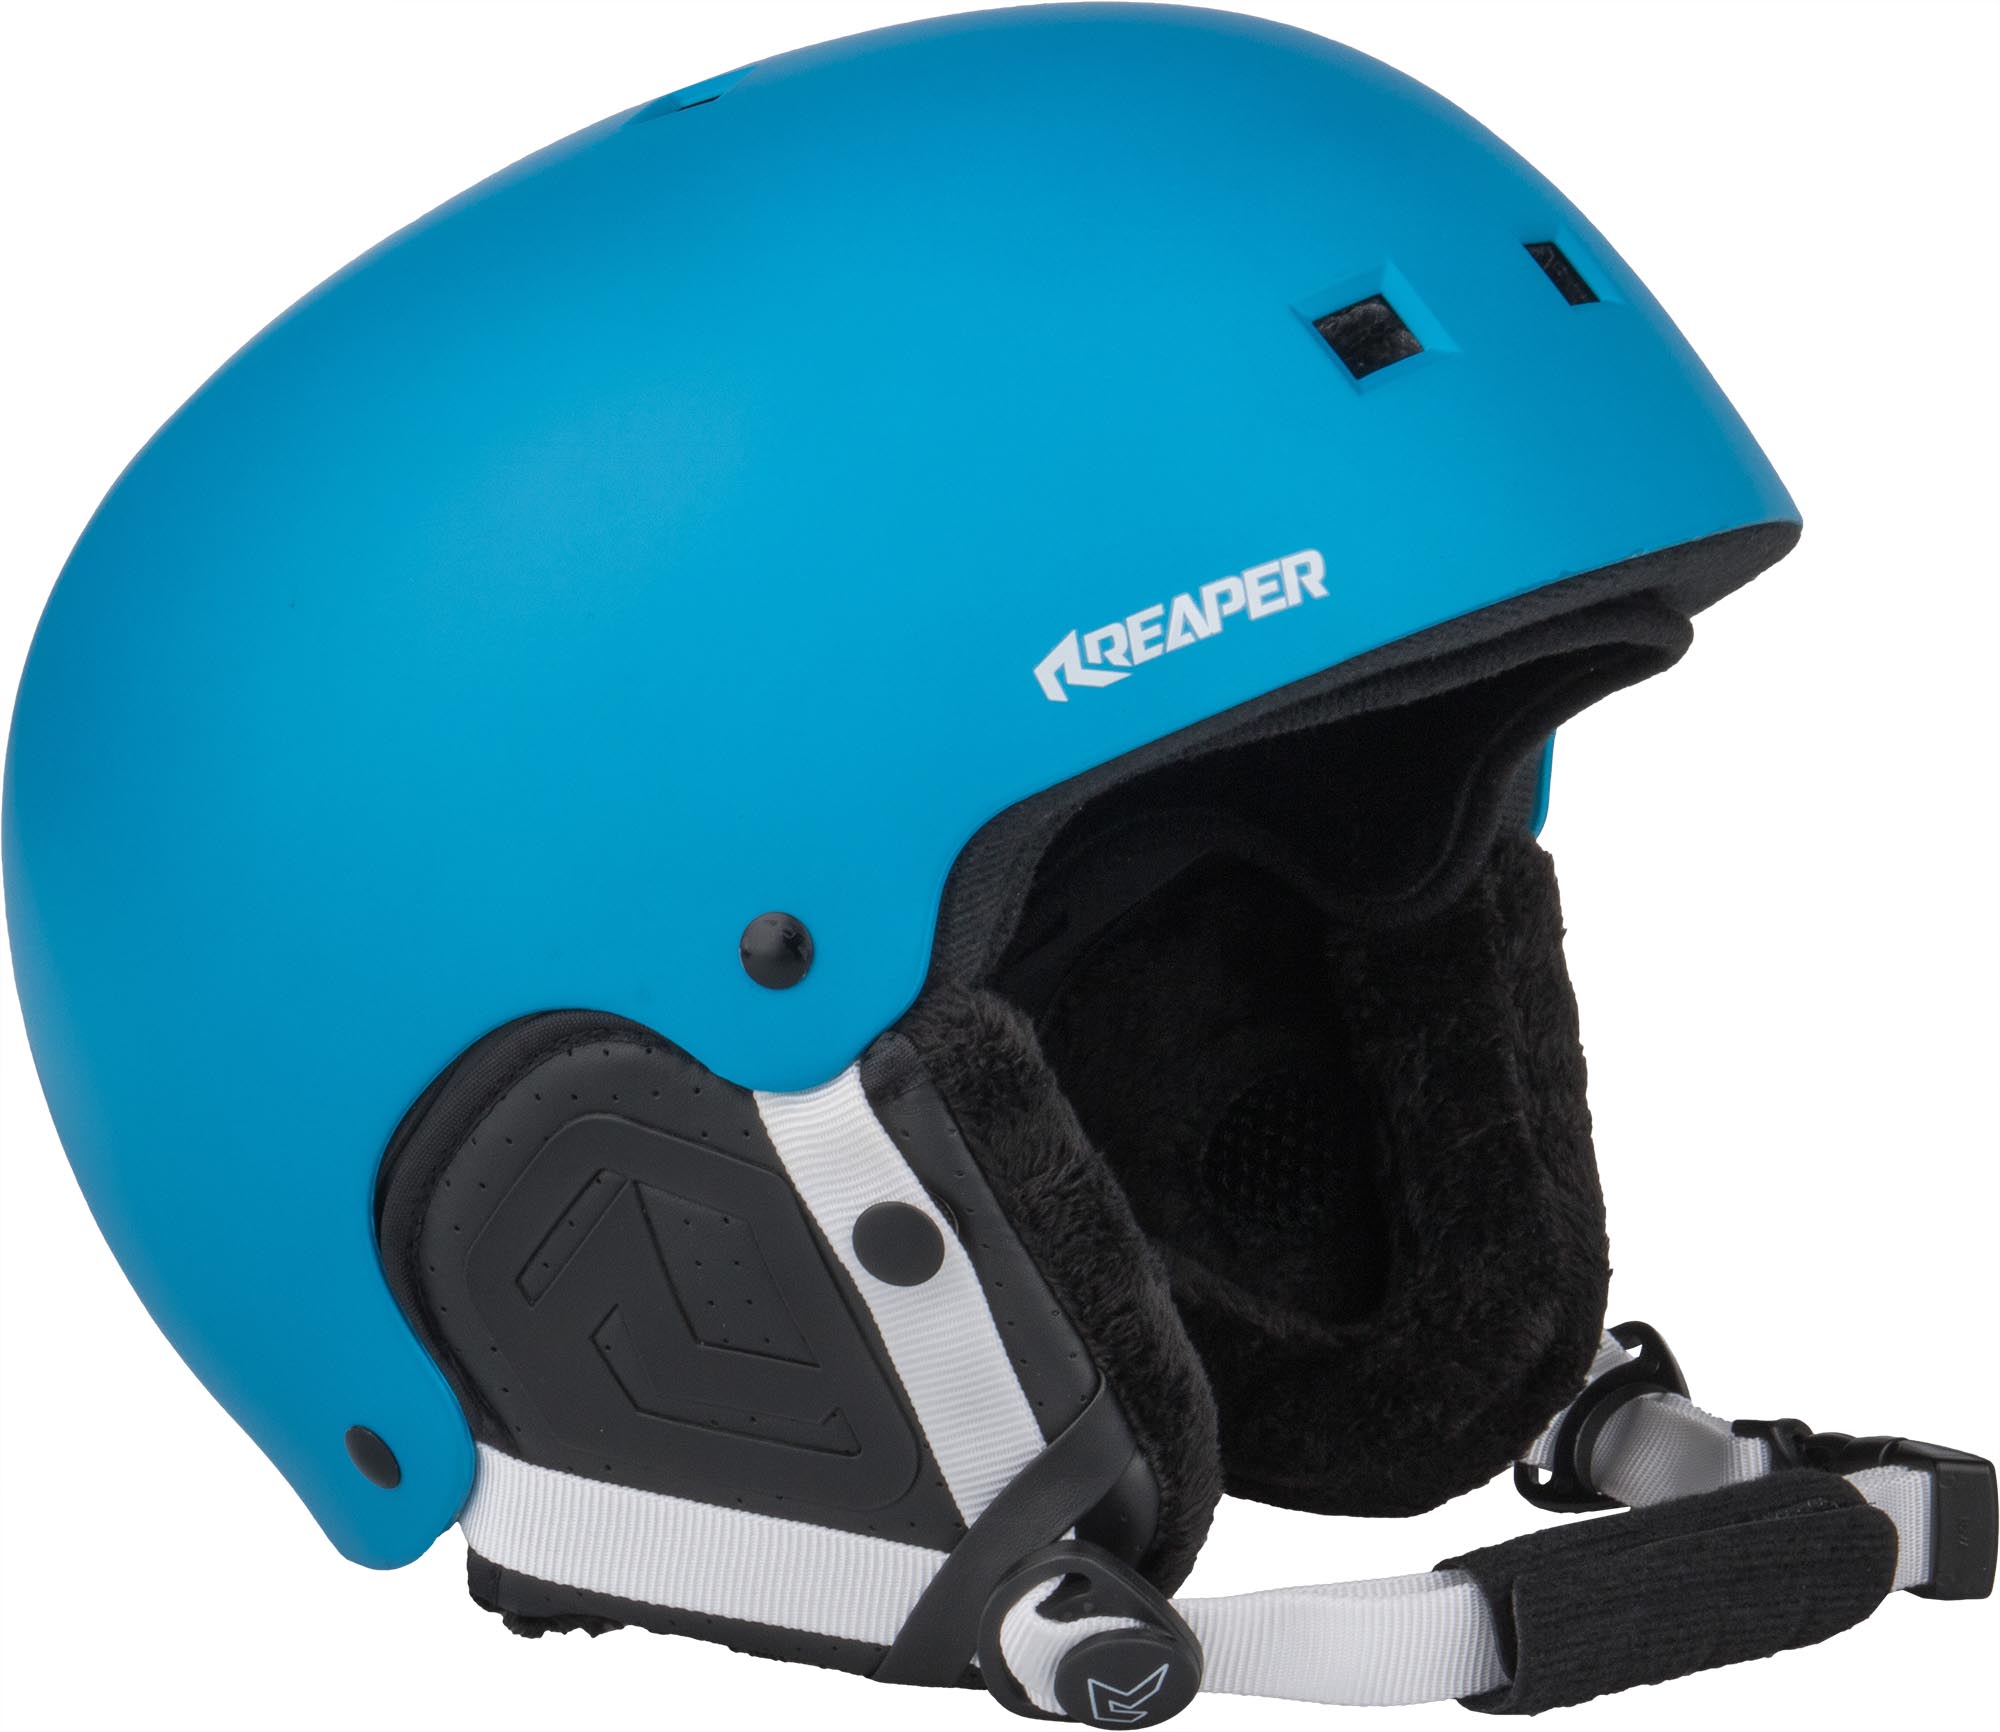 Men’s snowboard helmet